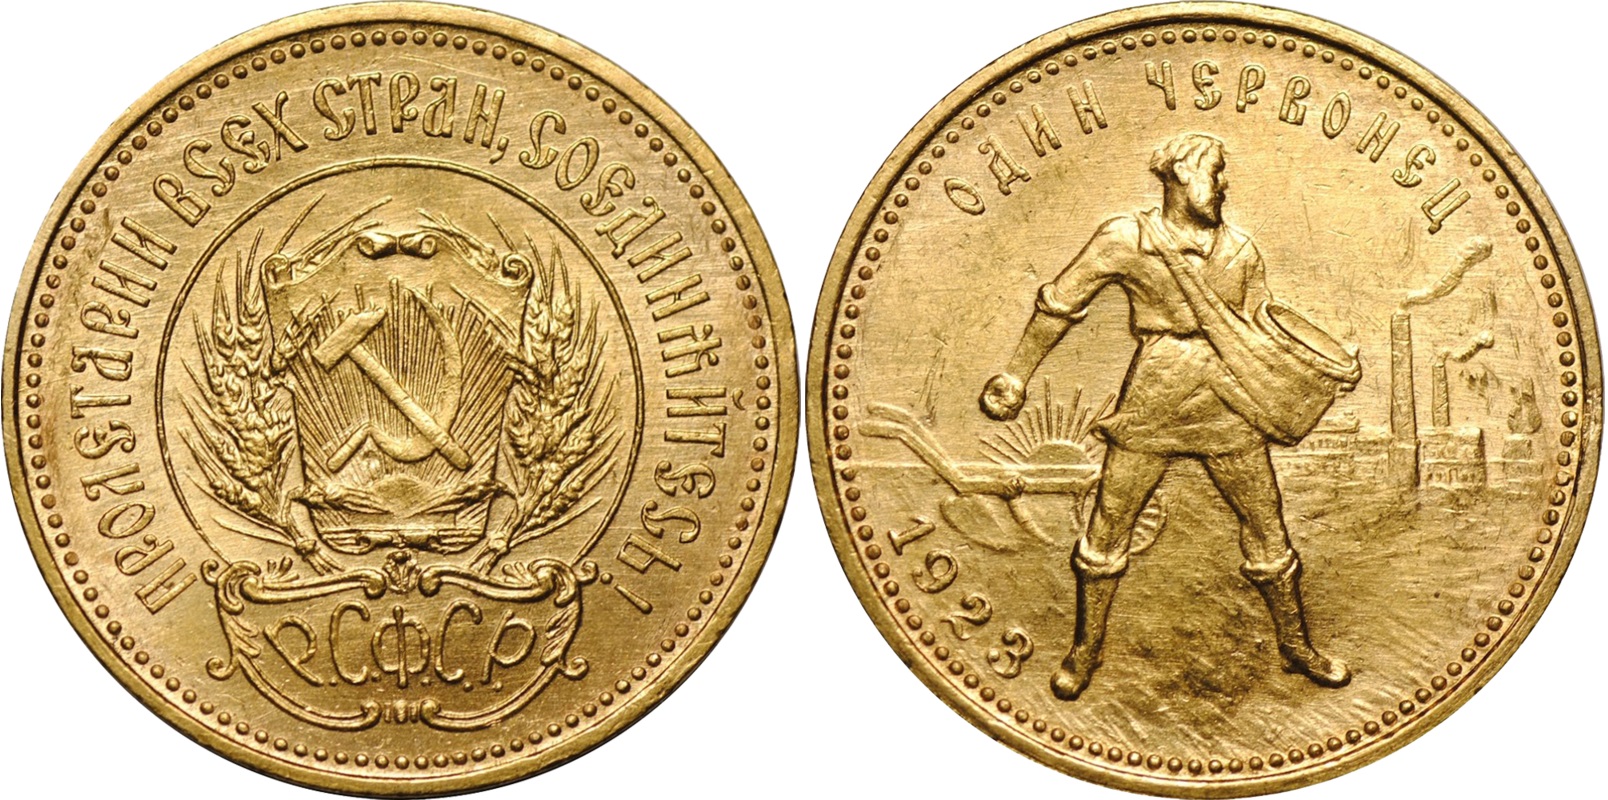 Великая страна СССР,золотые монеты в 1 червонец,1923 год